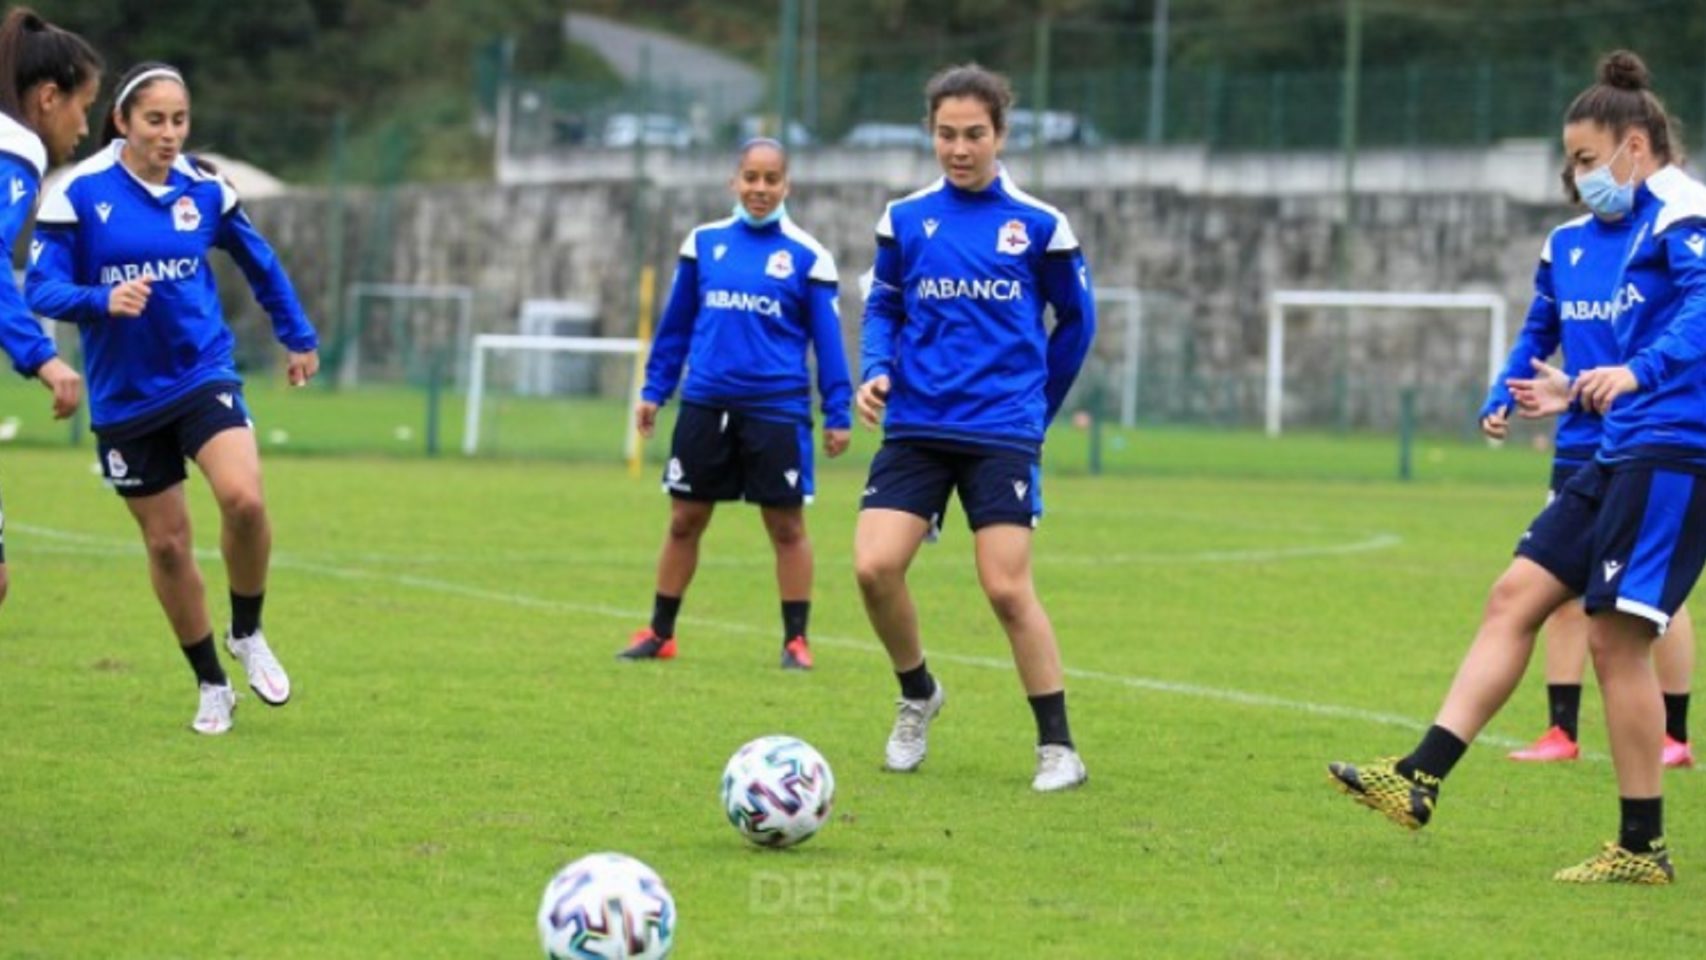 Las jugadoras del Deportivo Abanca durante un entrenamiento.